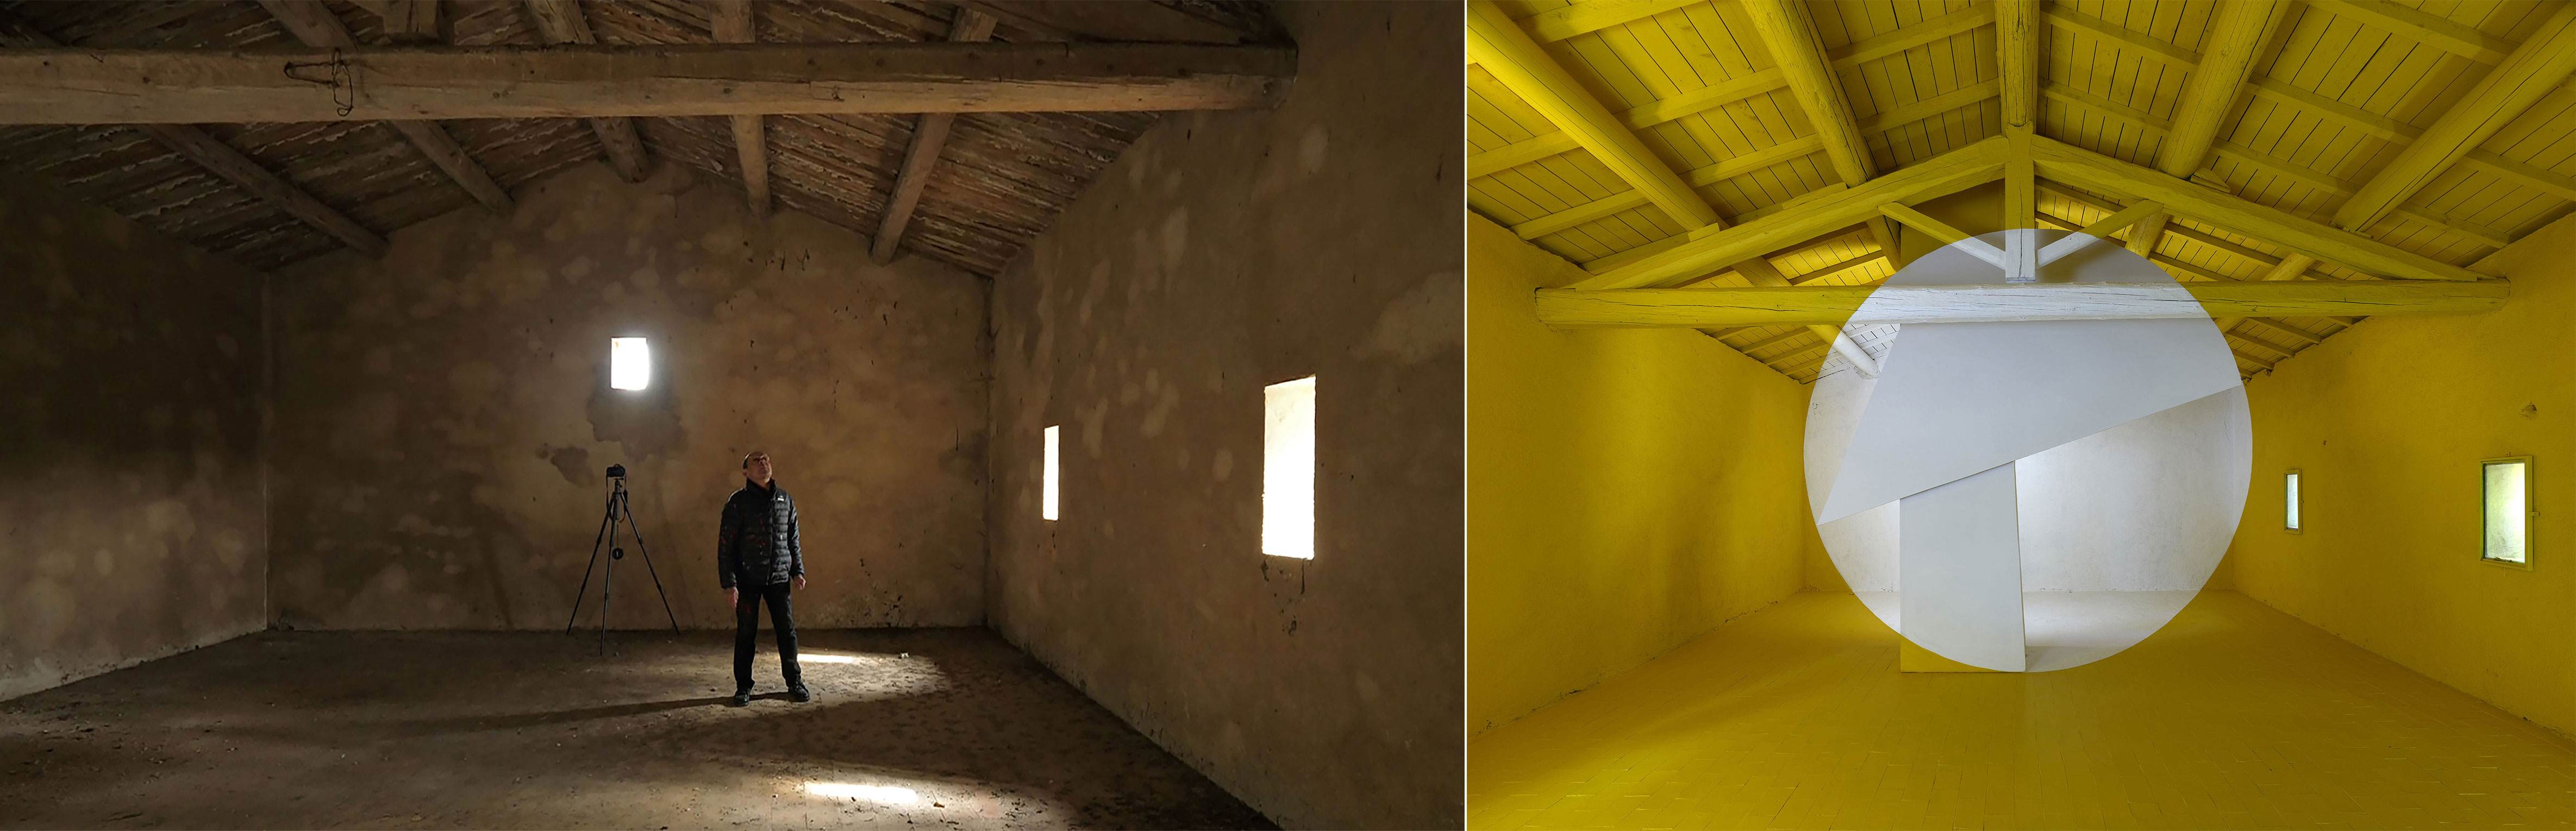 Georges Rousse, œuvre jaune in situ Rognes 2020 exposée au Château Bonisson - Crédit photo : Château Bonisson